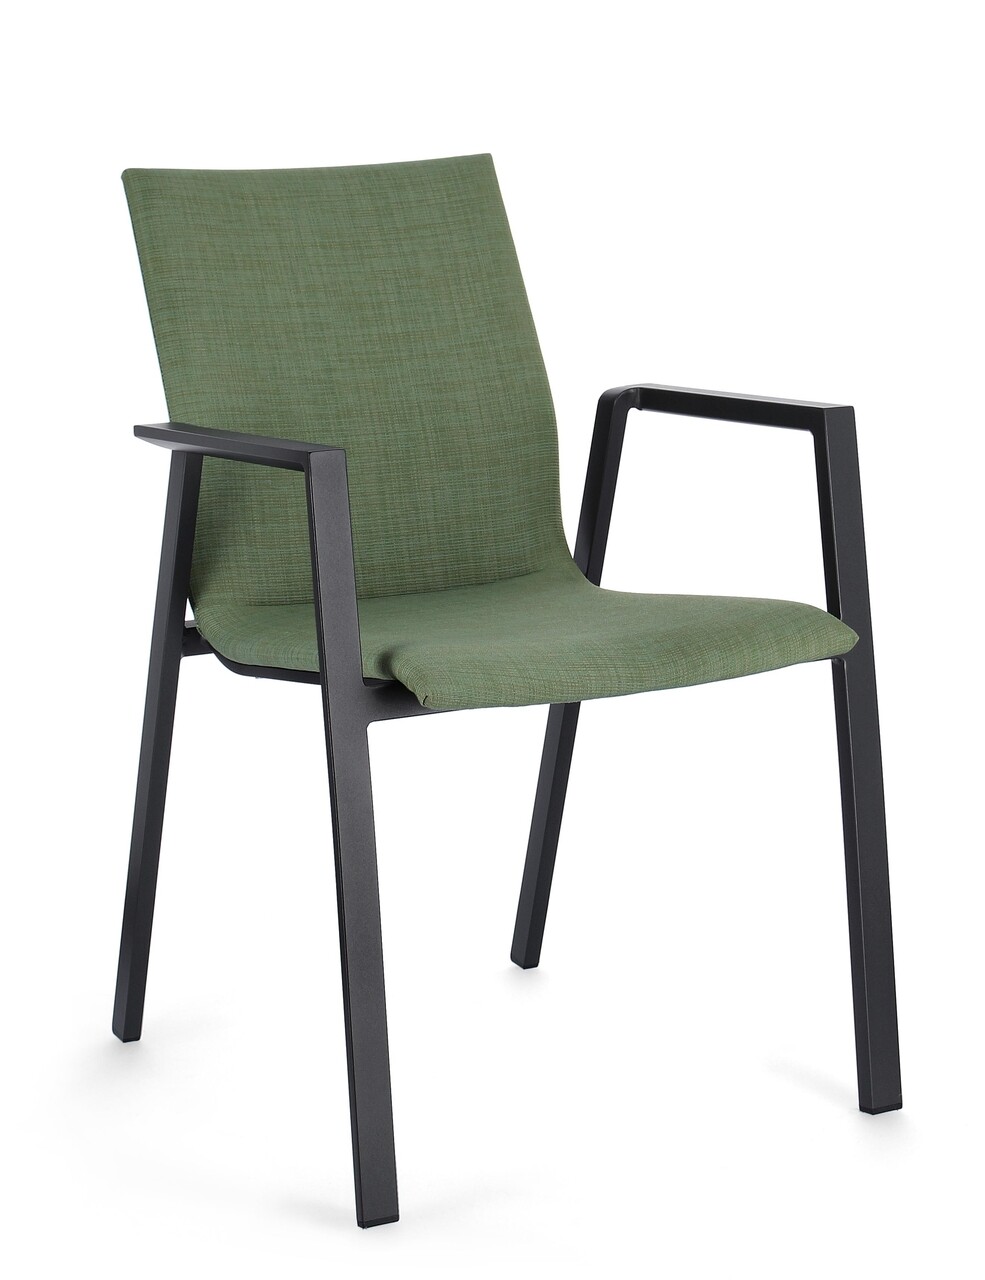 Odeon Kerti szék, Bizzotto, 55.5 x 60 x 83 cm, alumínium/textilén/ofelin, szénszürke/sötét zöld